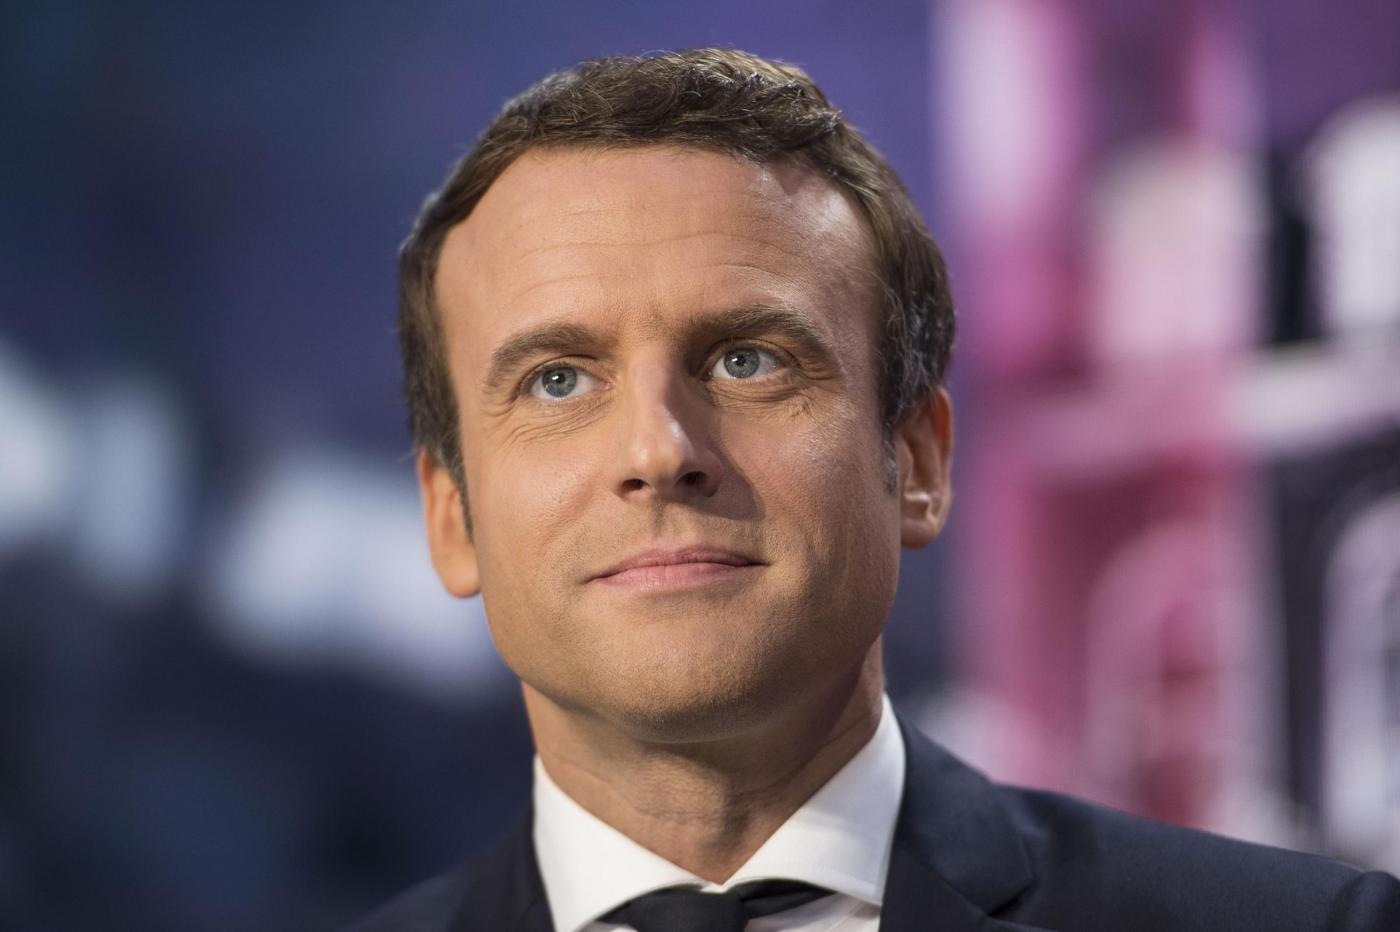 Emmanuel Macron, la biografia: chi è il nuovo presidente della Francia